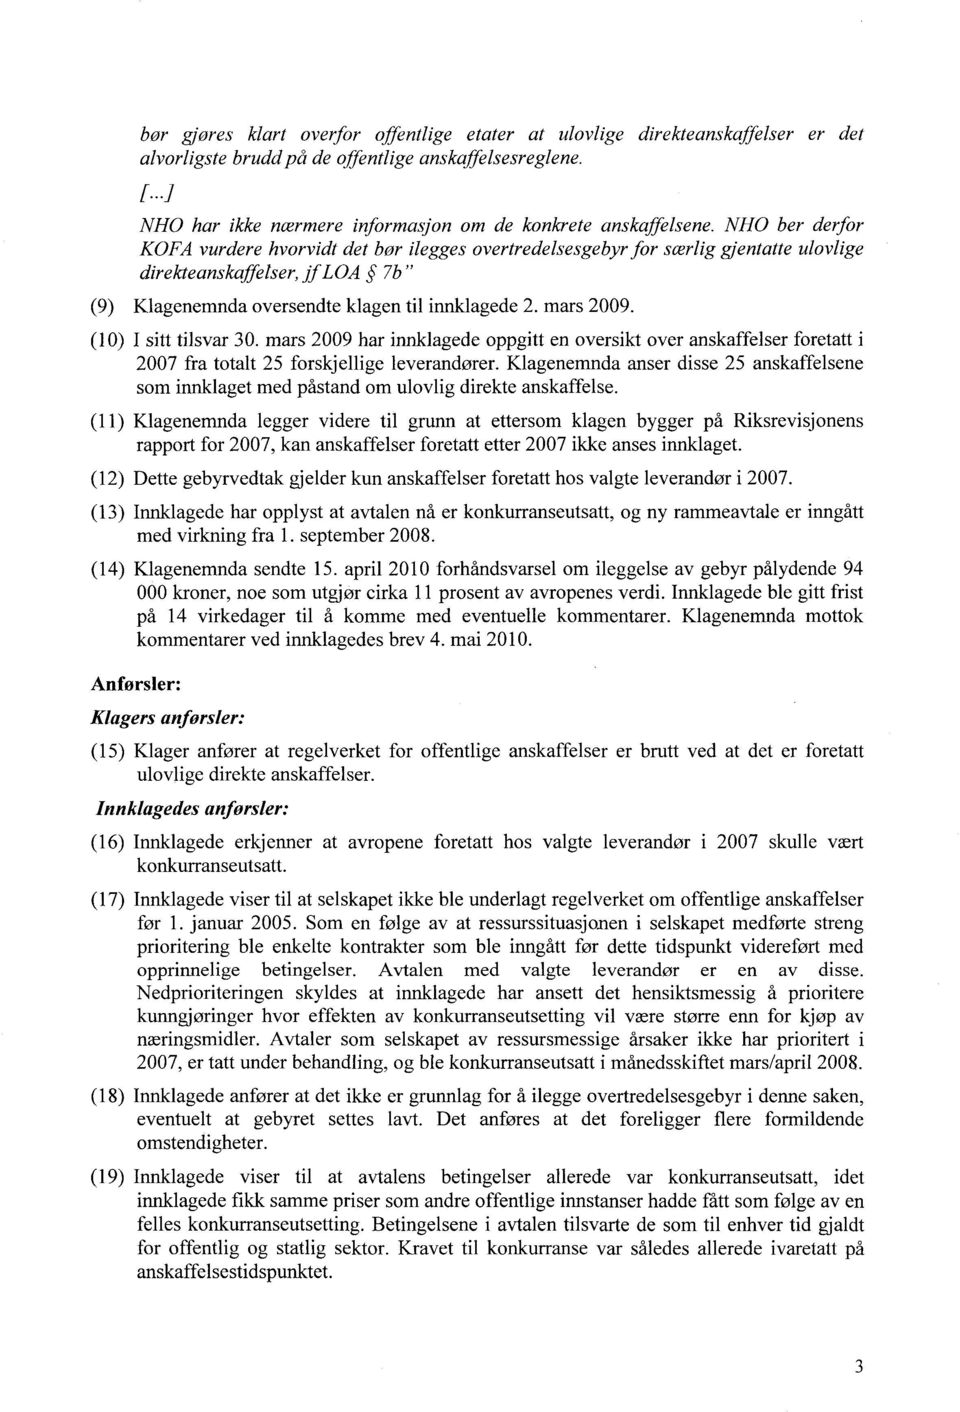 NHO ber derfor KOFA vurdere hvorvidt detbør ileggesovertredelsesgebyr for særligjentatte ulovlige direkteanskaffelser, jf LOA 7b " (9) Klagenemnda oversendte klagen til innklagede 2. mars 2009.